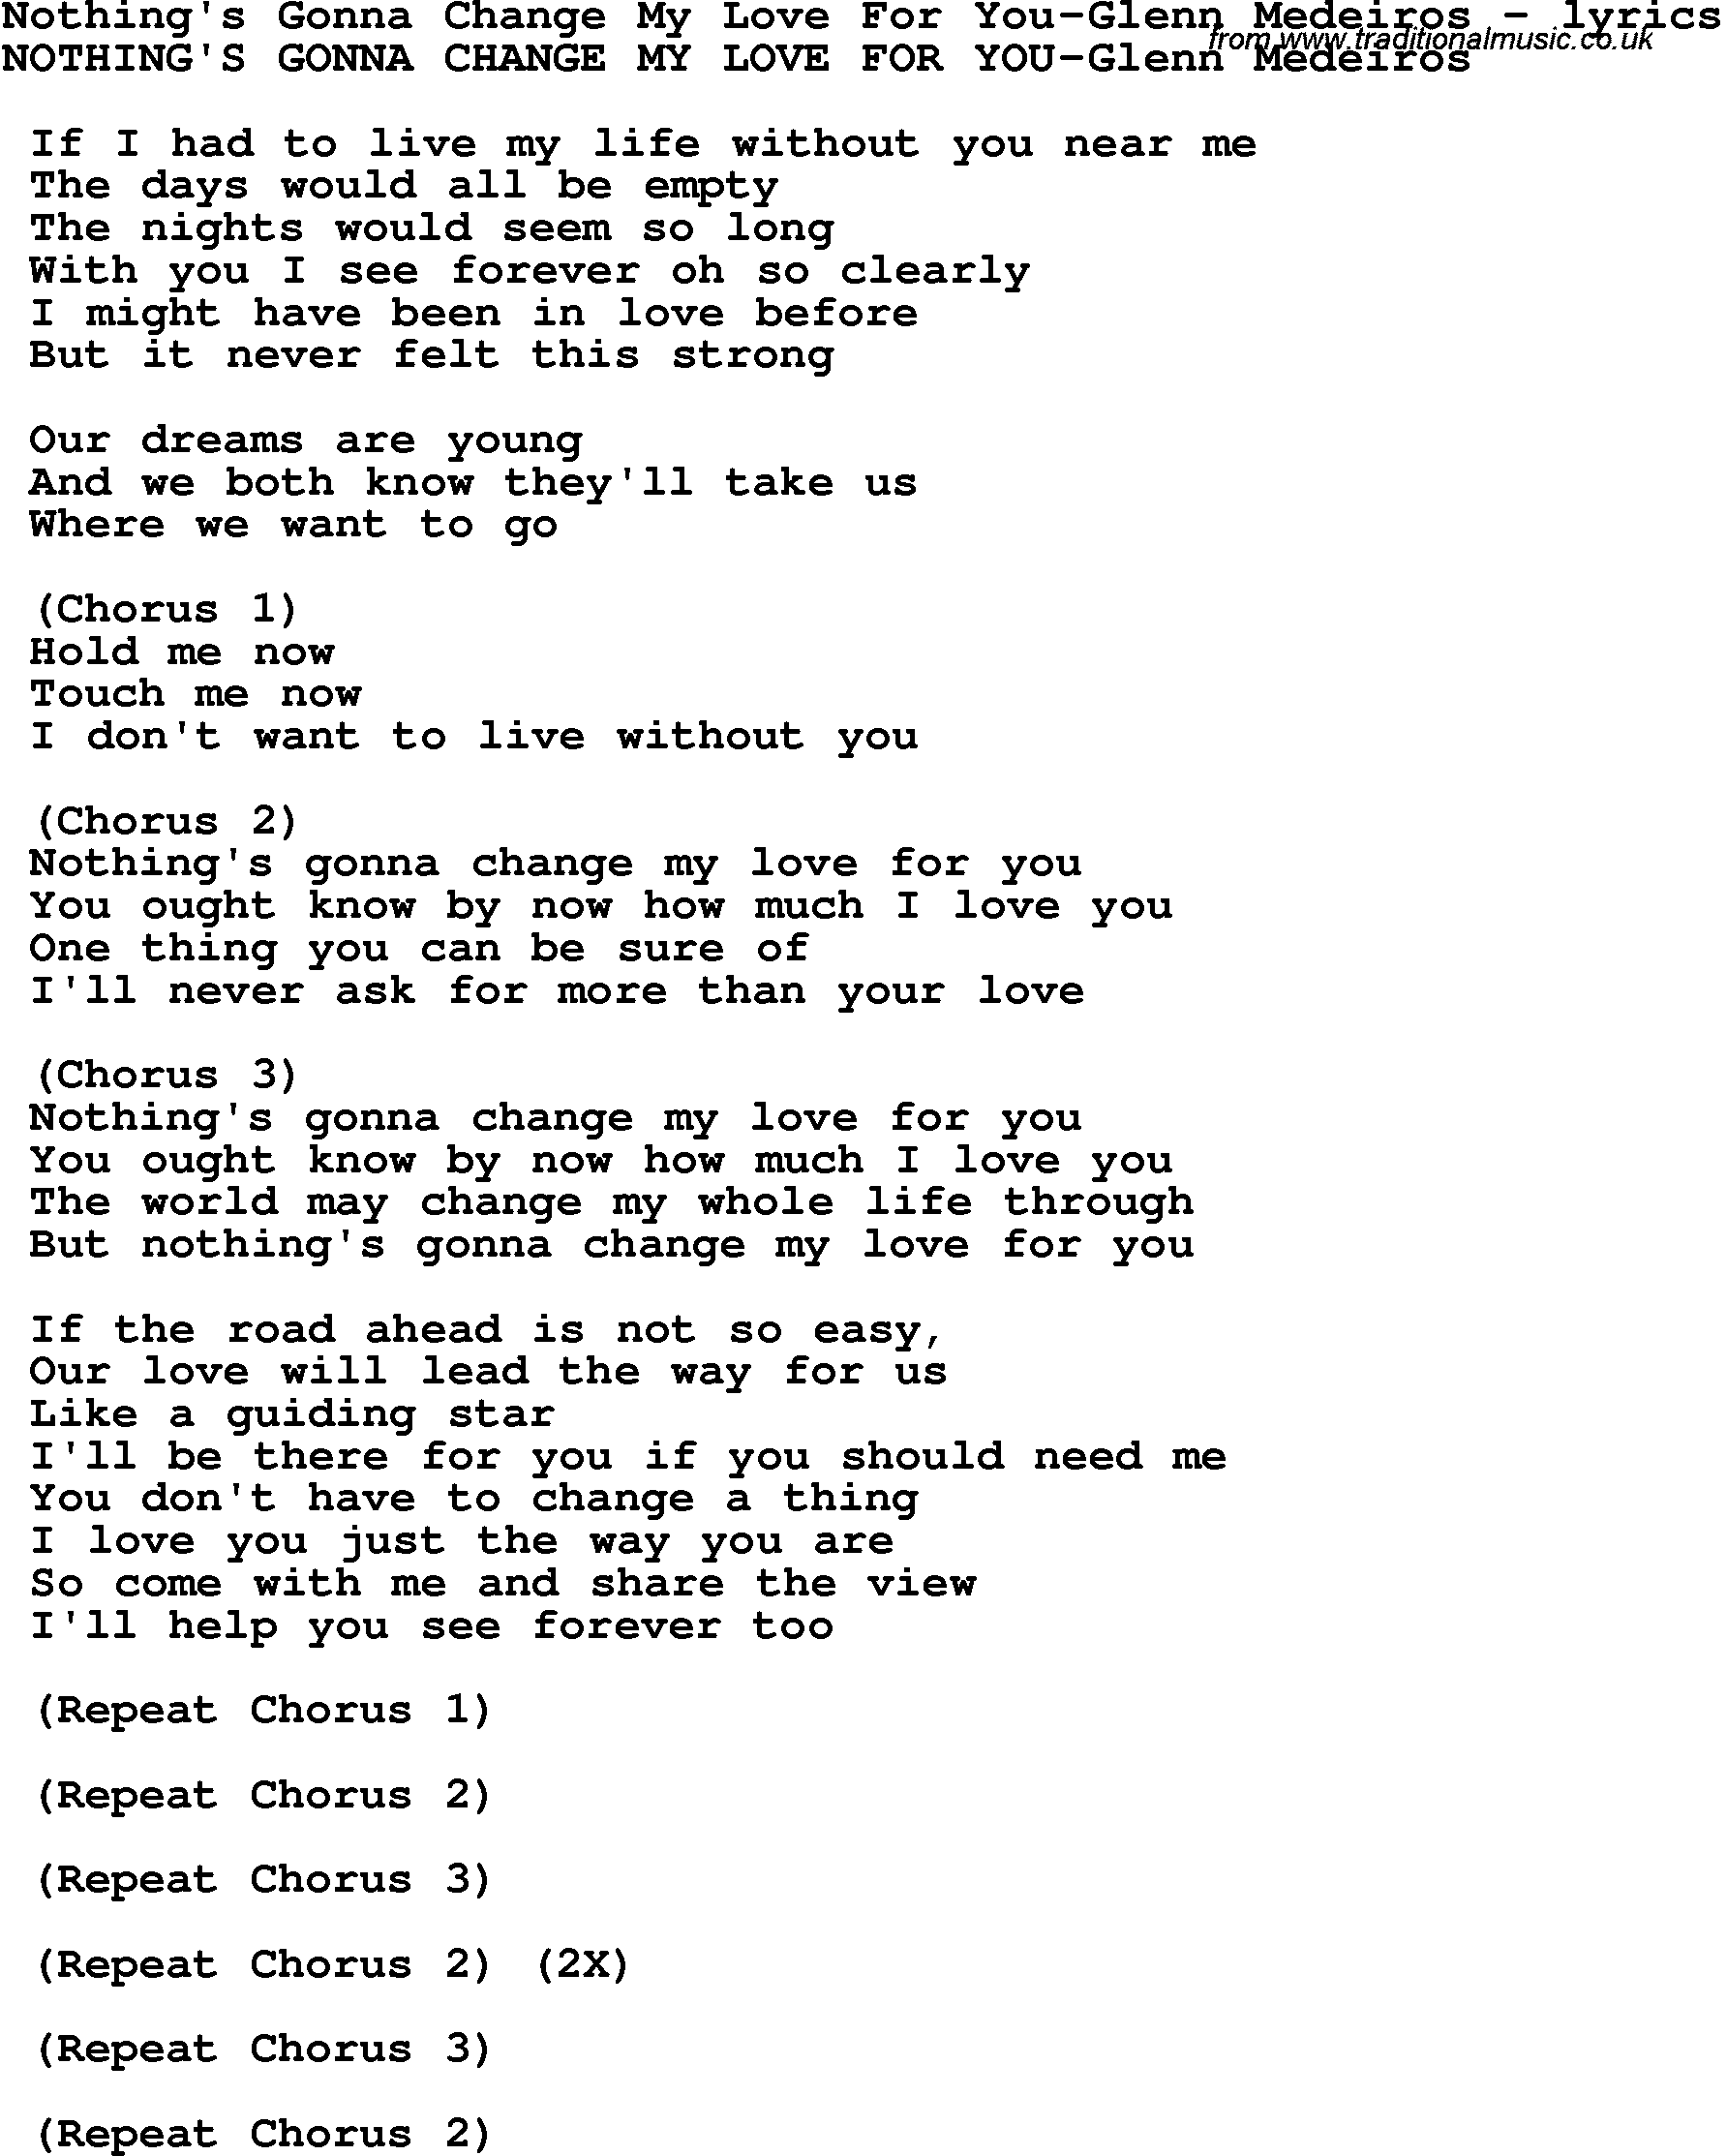 Love Song Lyrics for: Nothing's Gonna Change My Love For You-Glenn Medeiros